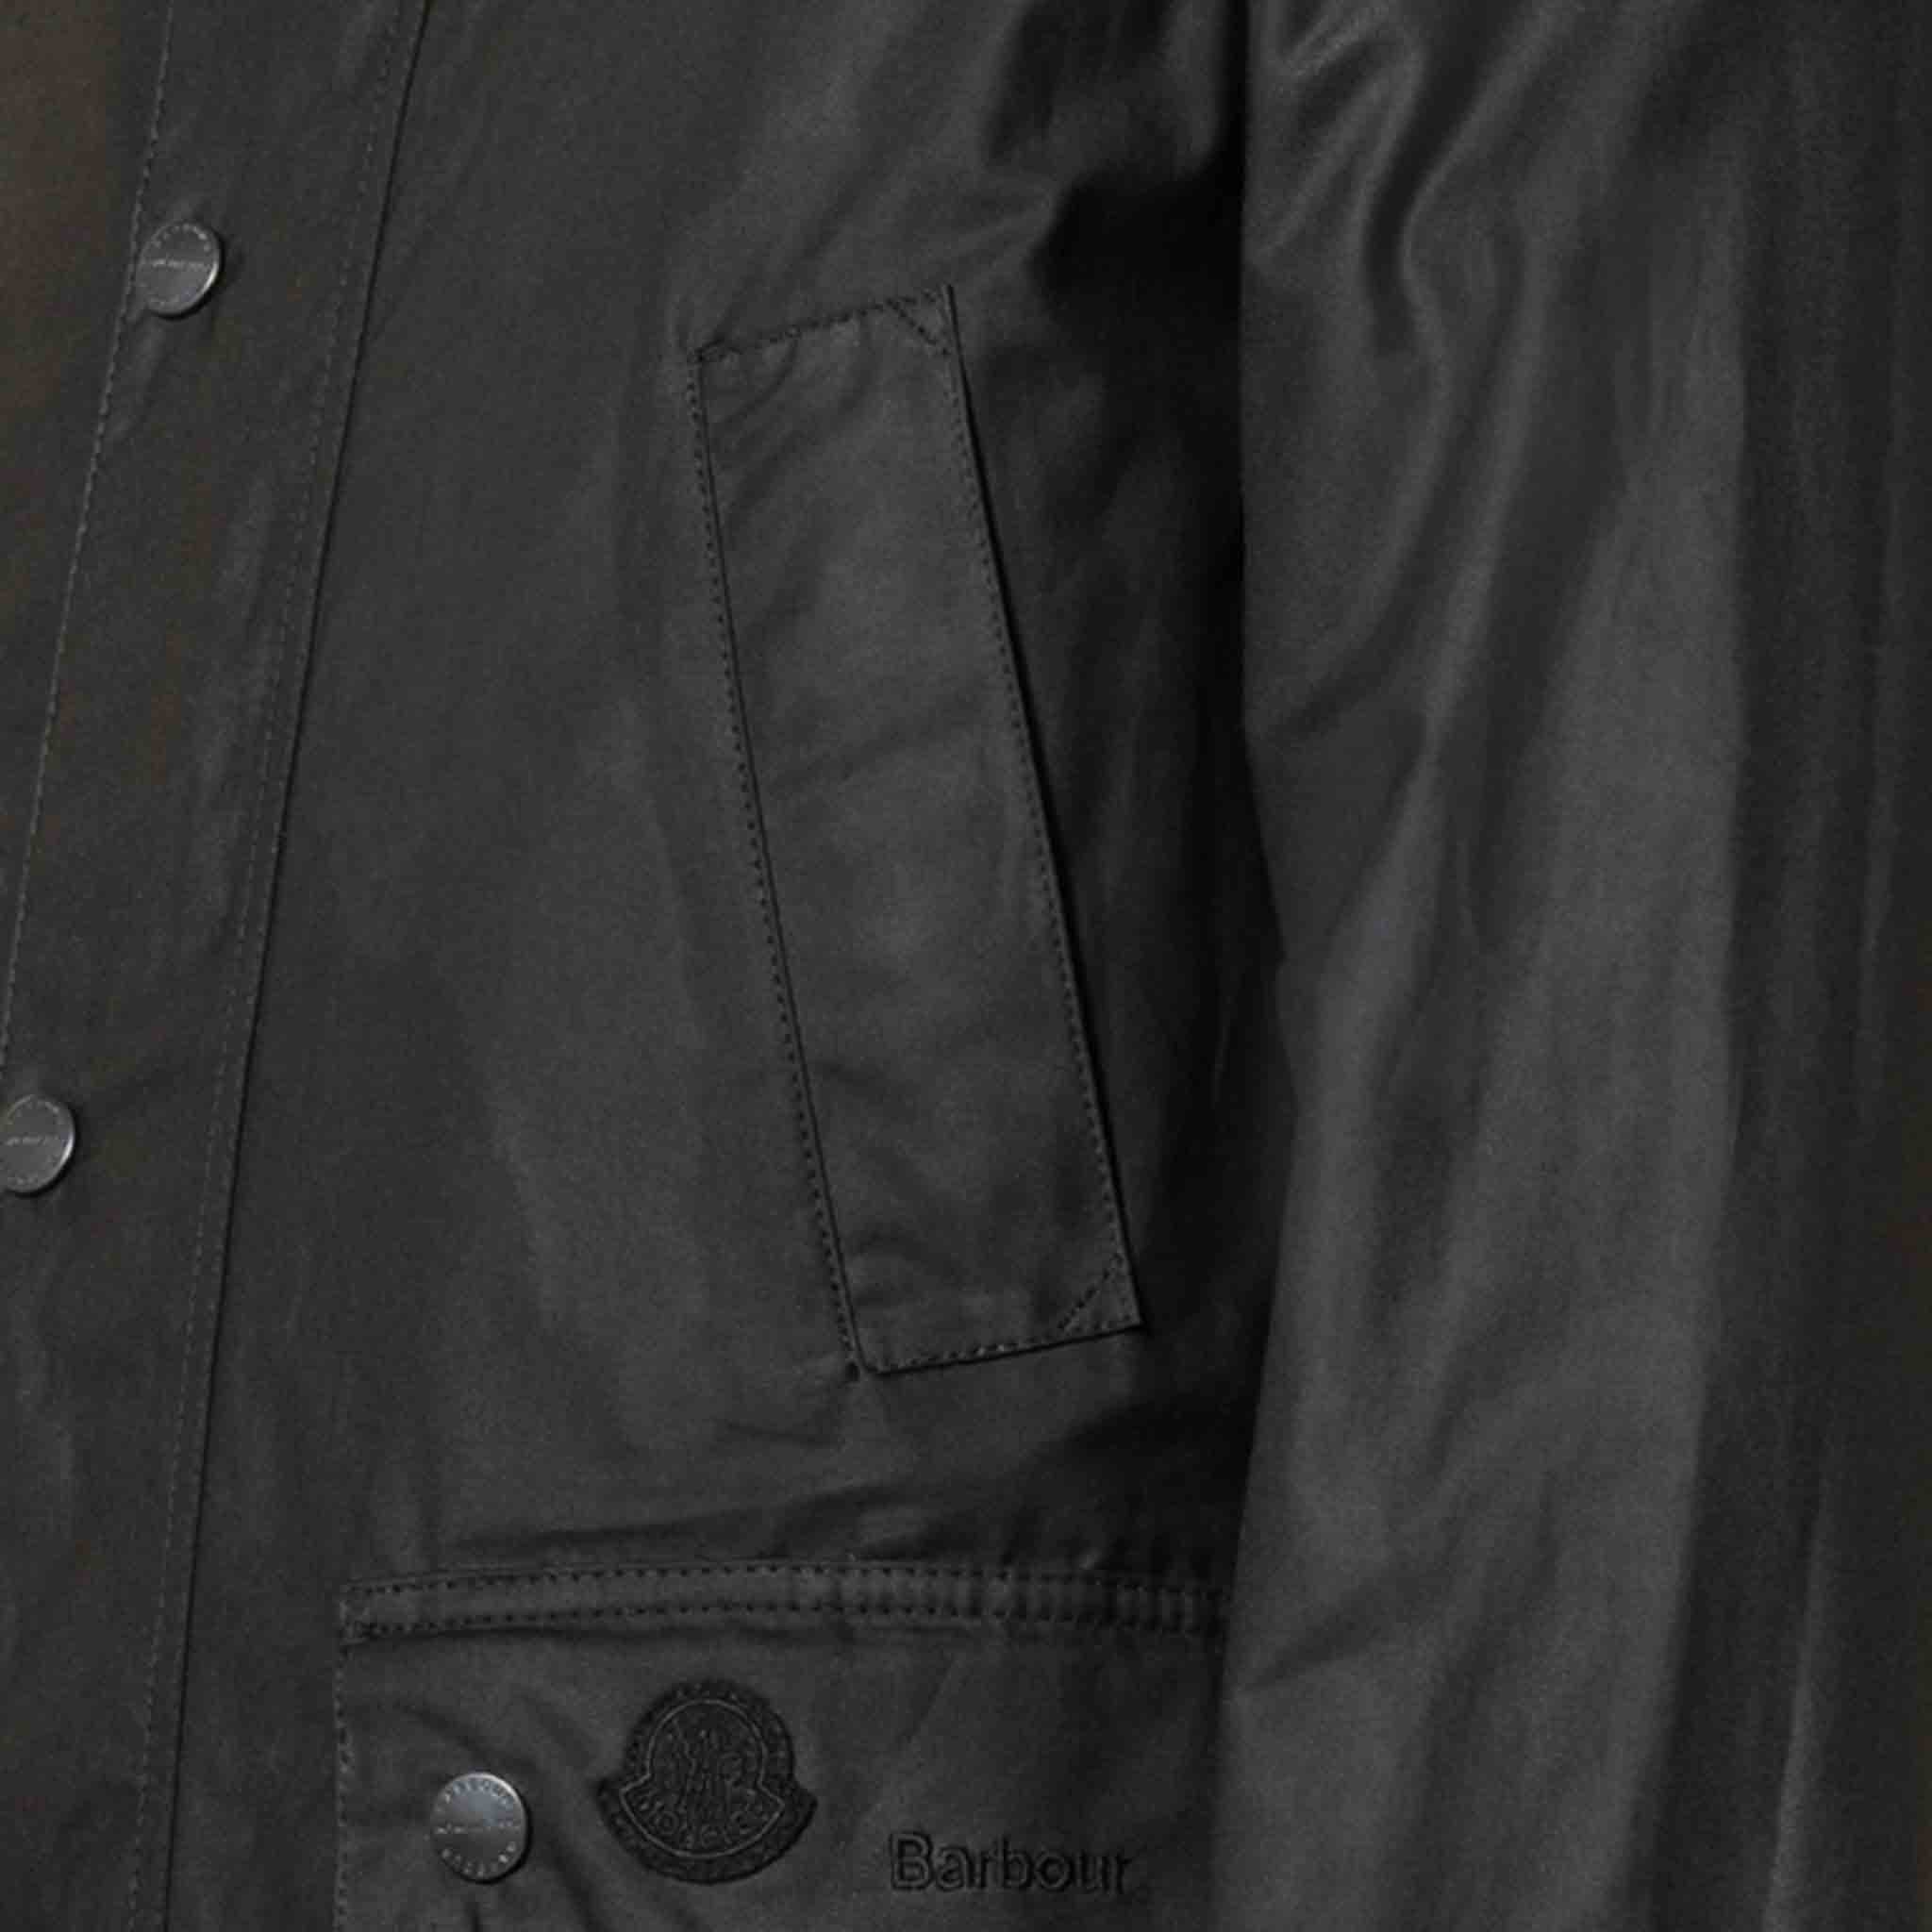 Moncler Genius X Barbour Men's Wight Jacket in Black